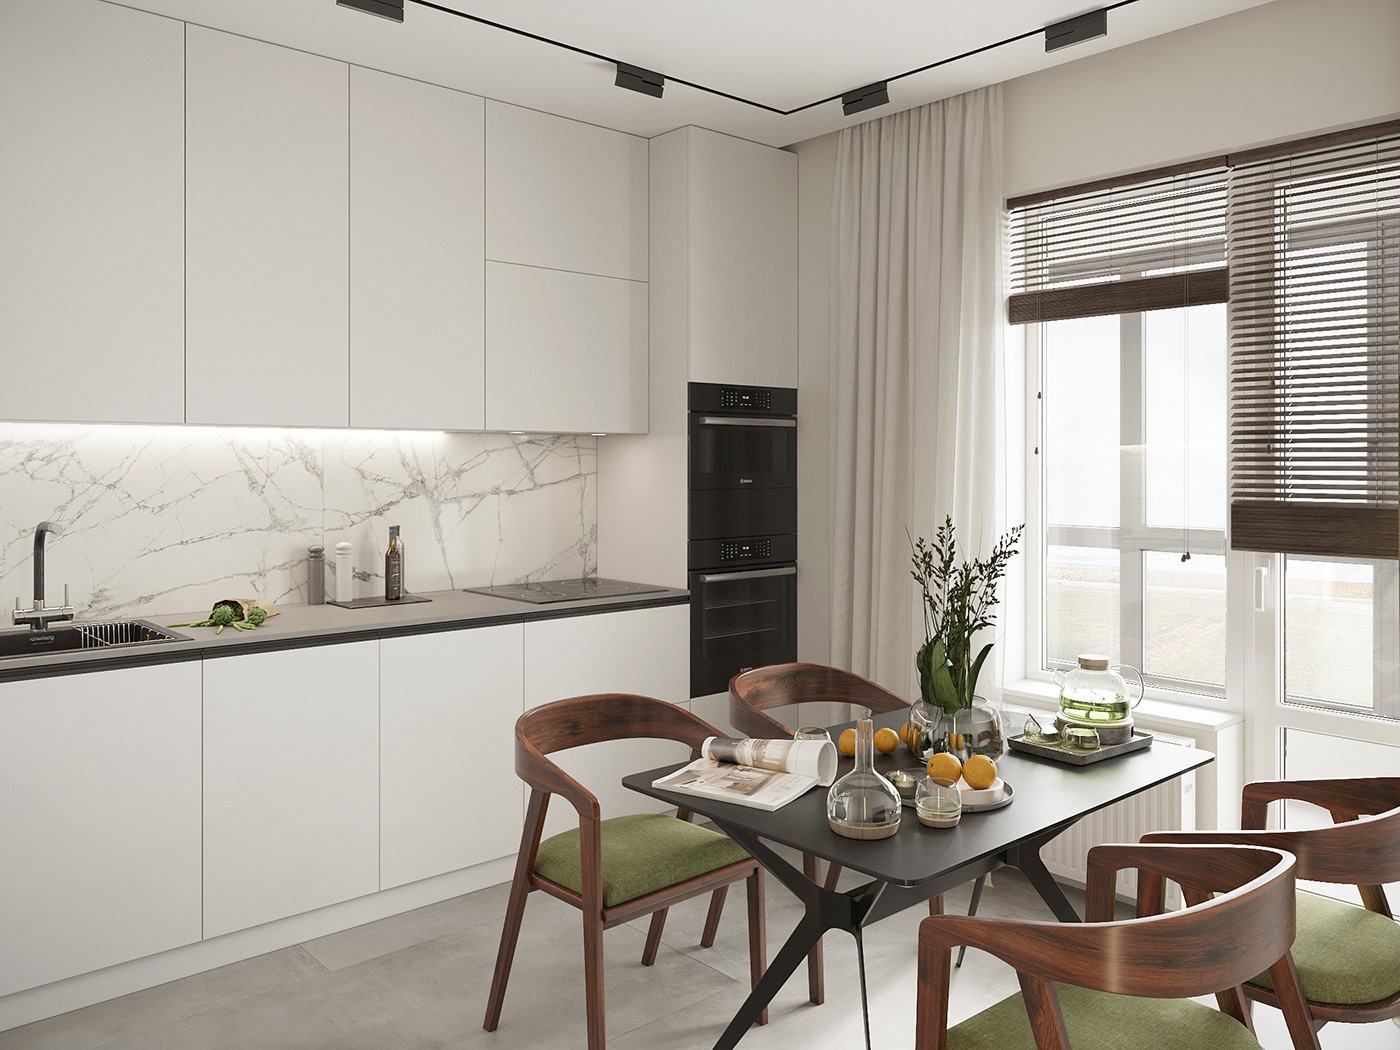 3D 3ds max architecture corona design Interior interior design  kitchen Render visualization